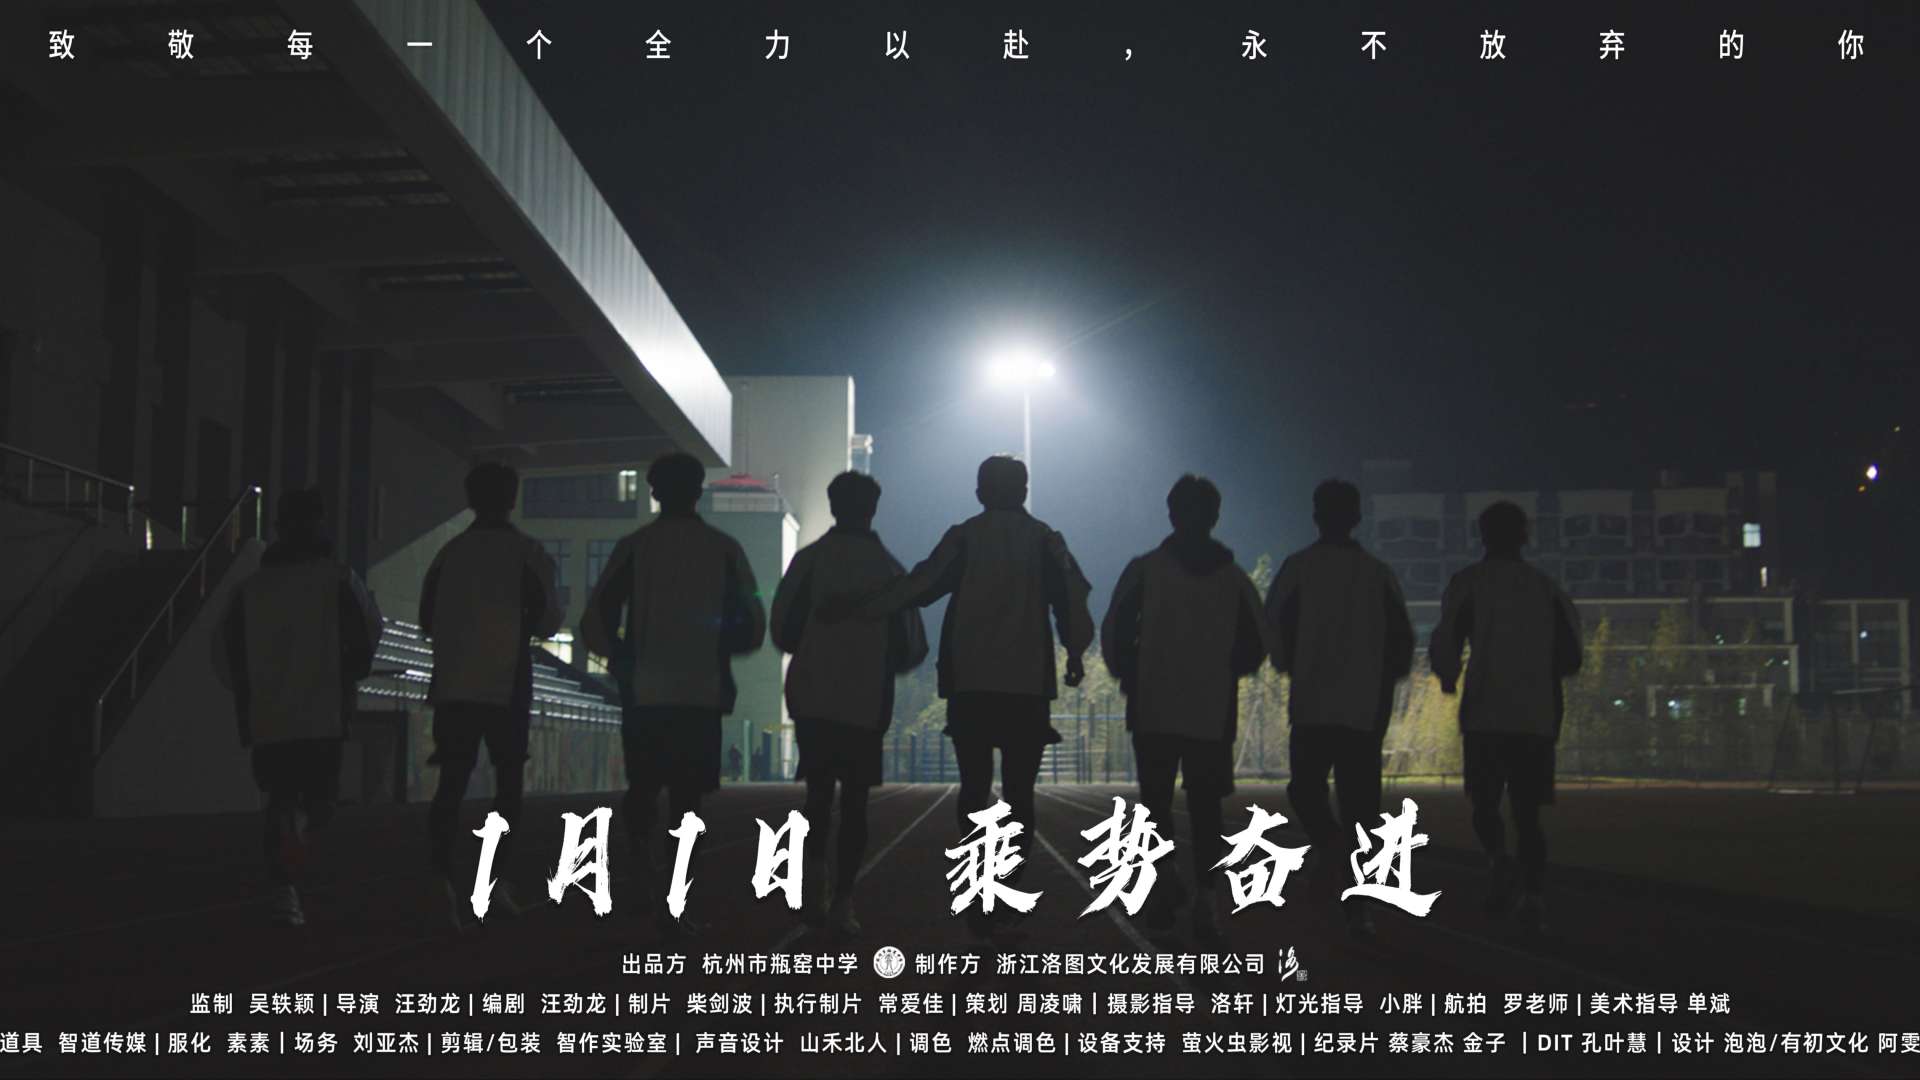 《我们的瓶高时光》丨杭州市瓶窑中学宣传片